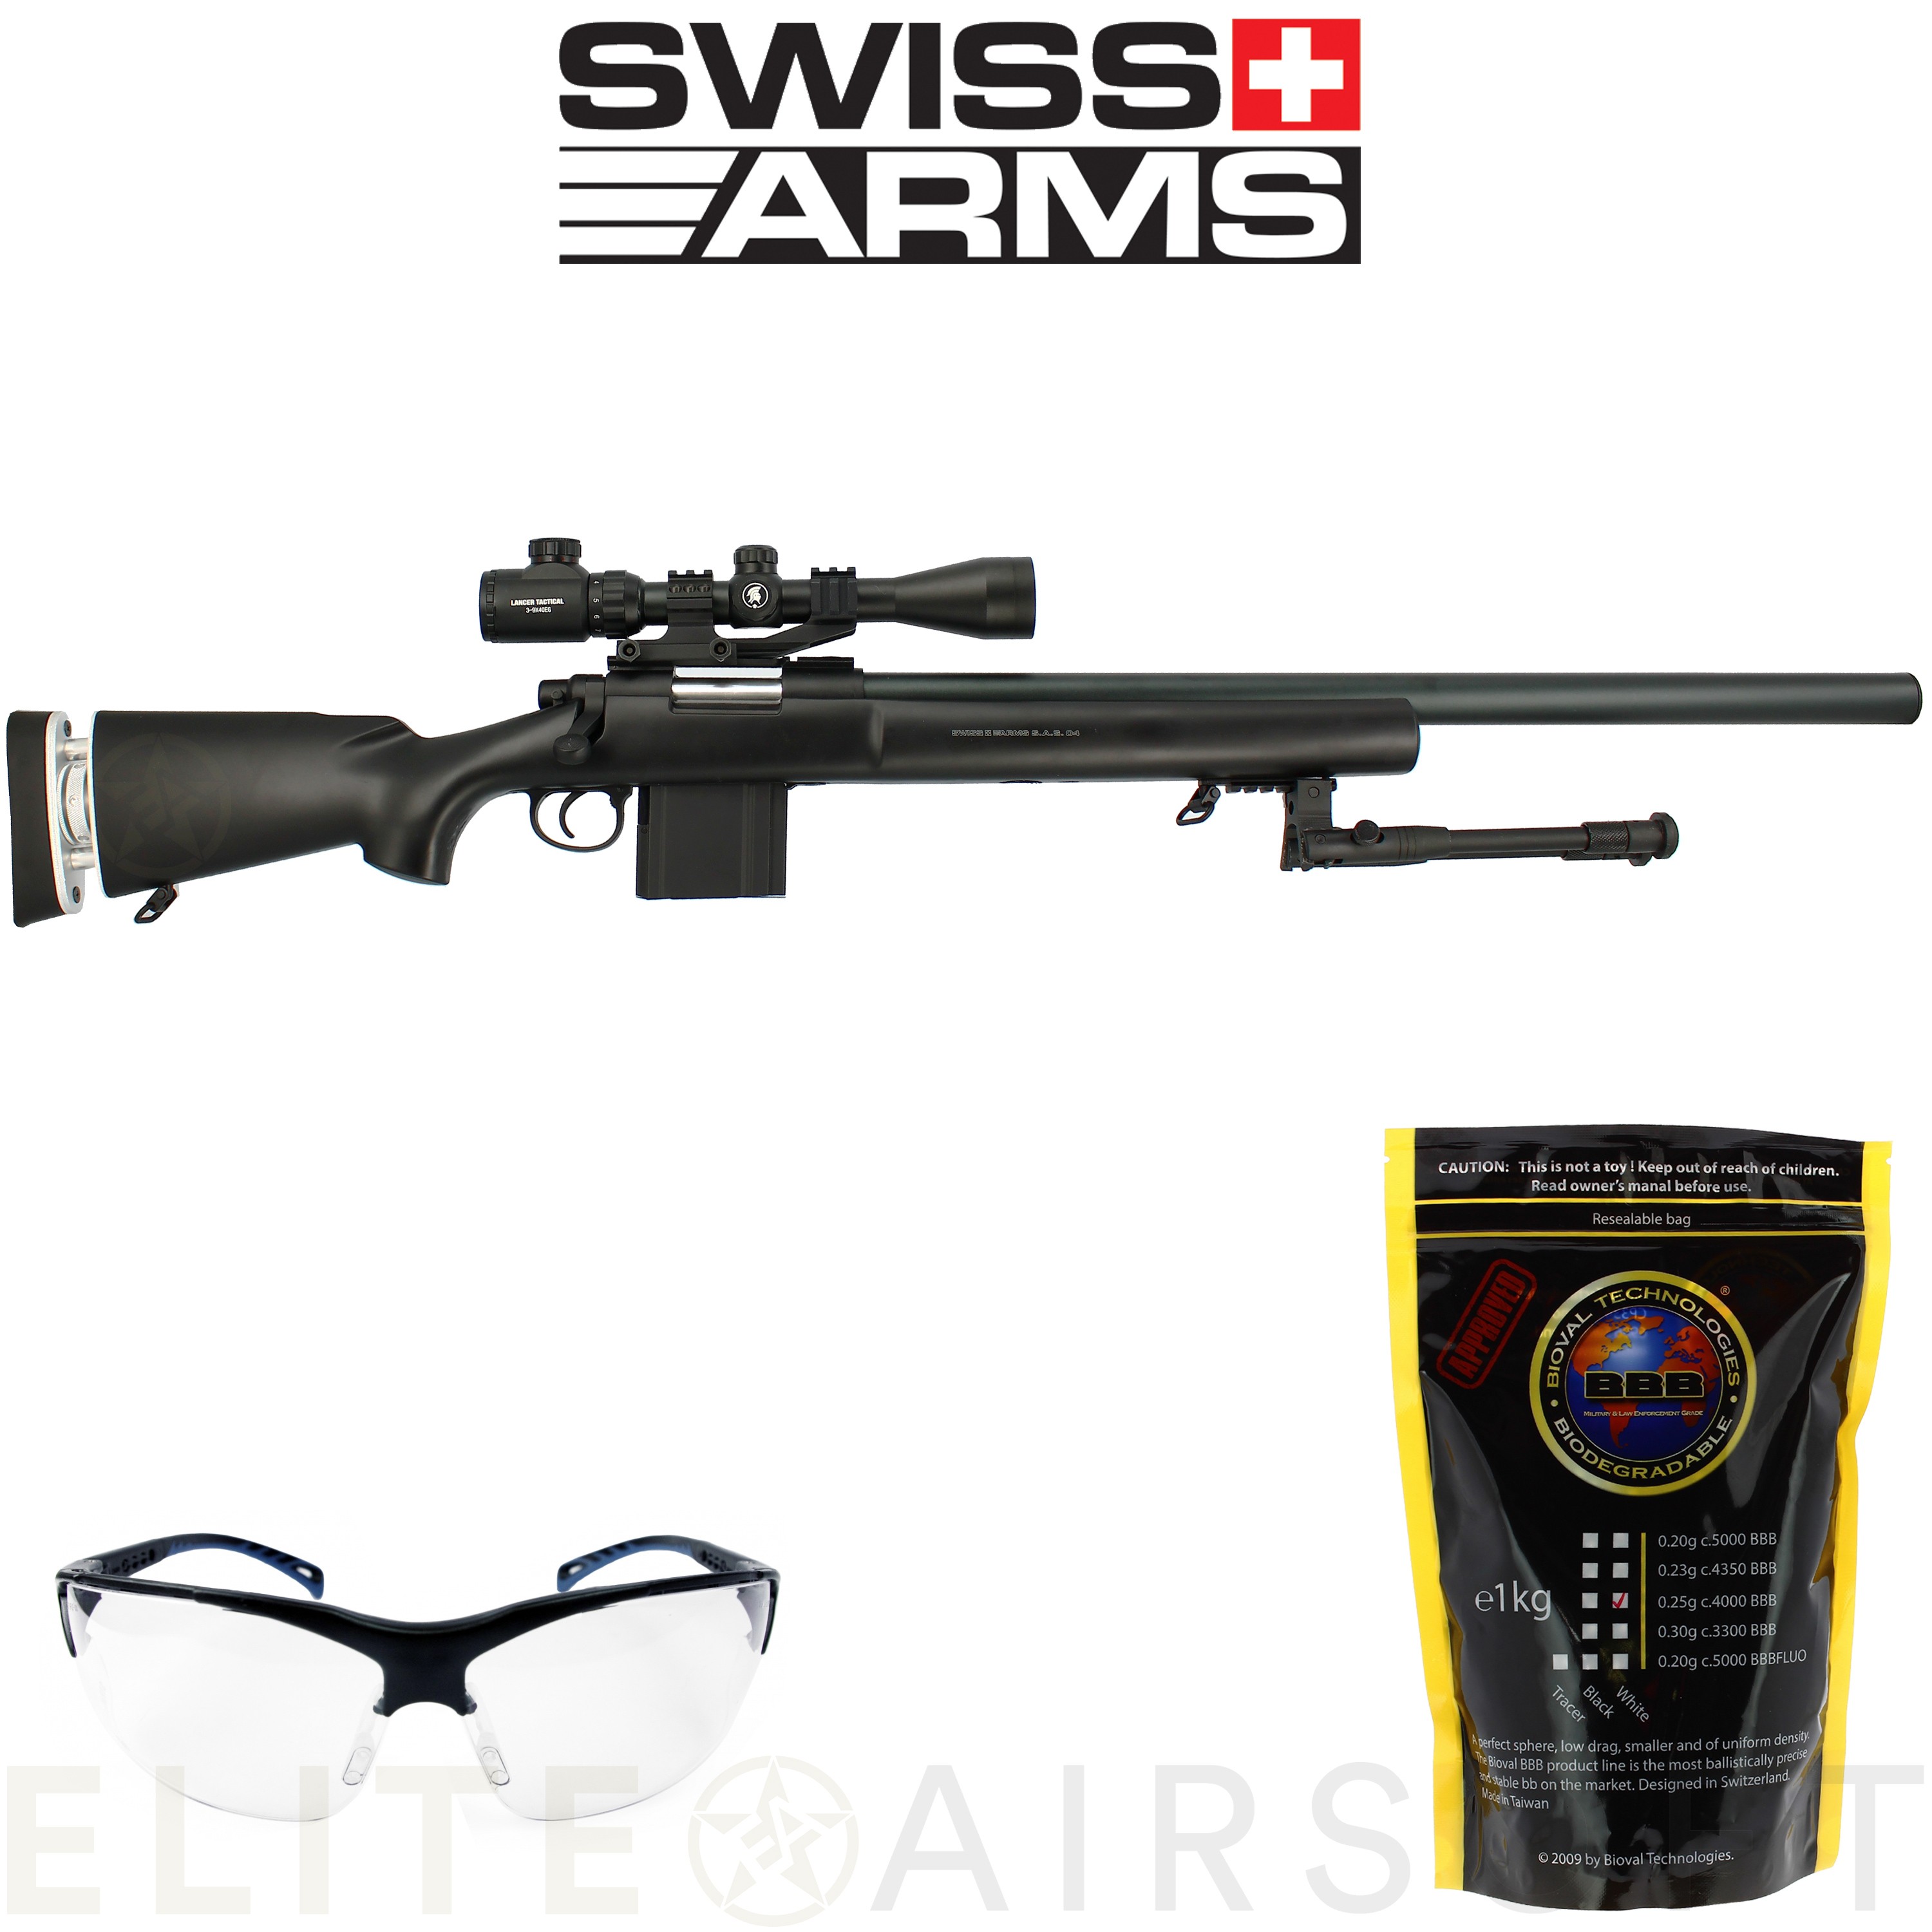 Sangle pour arme tactical noire Swiss Arms 3 point